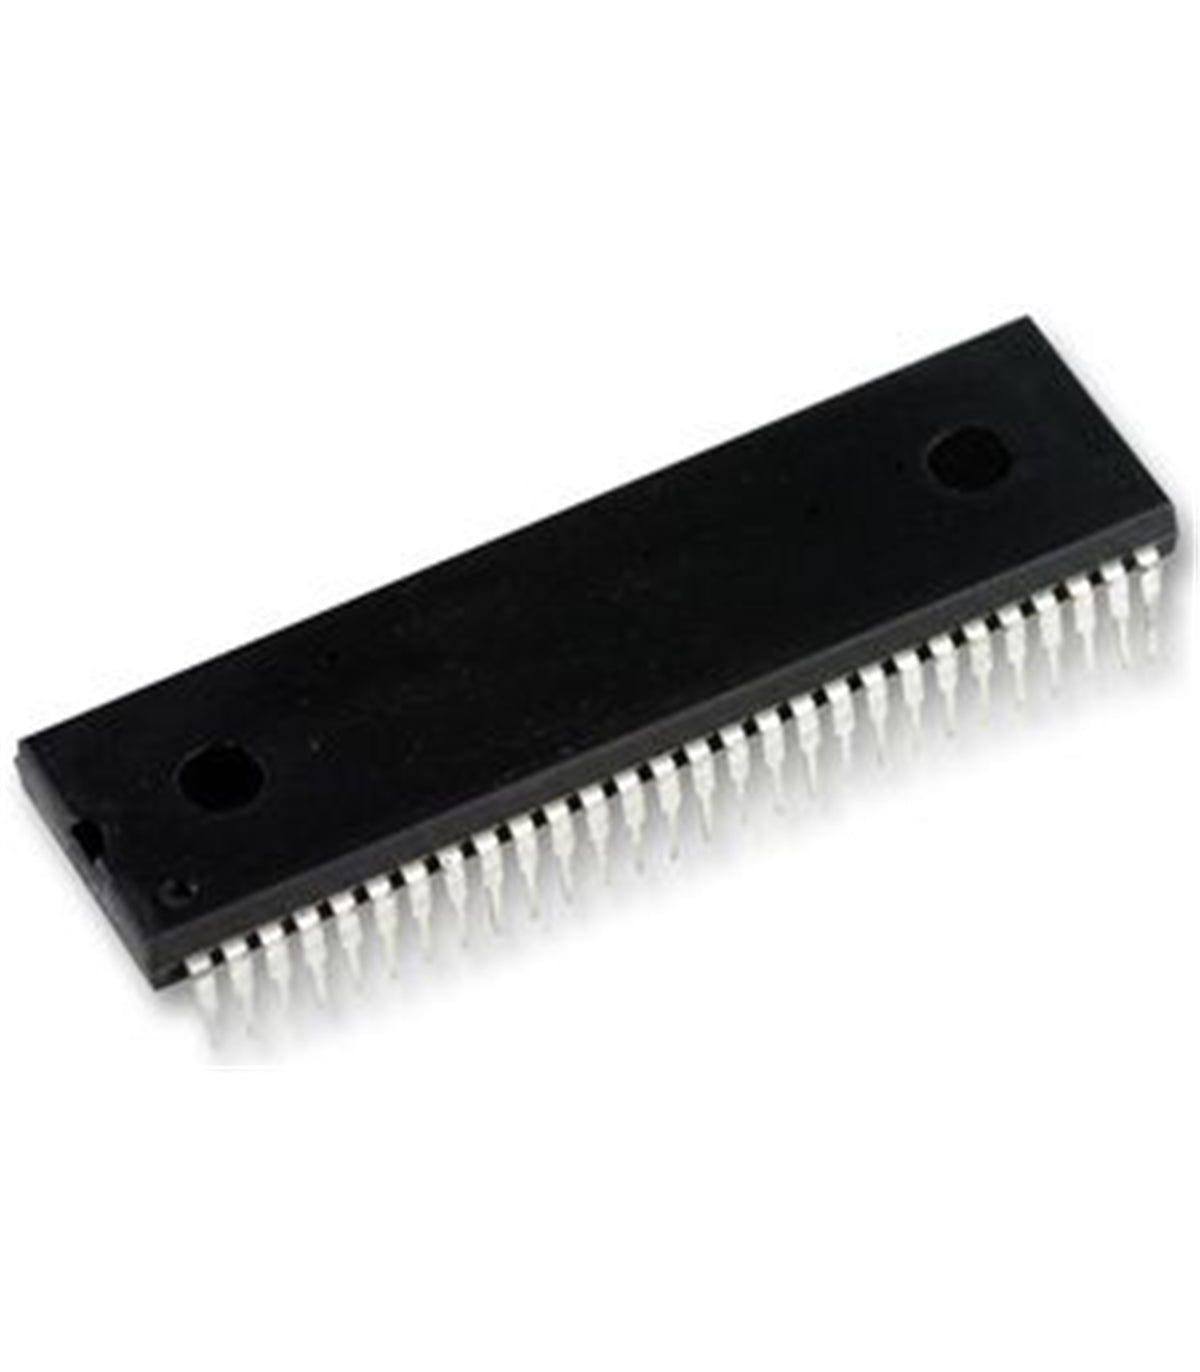 ST STV2246 Componente elettronico, circuito integrato, transistor, 56 contatti